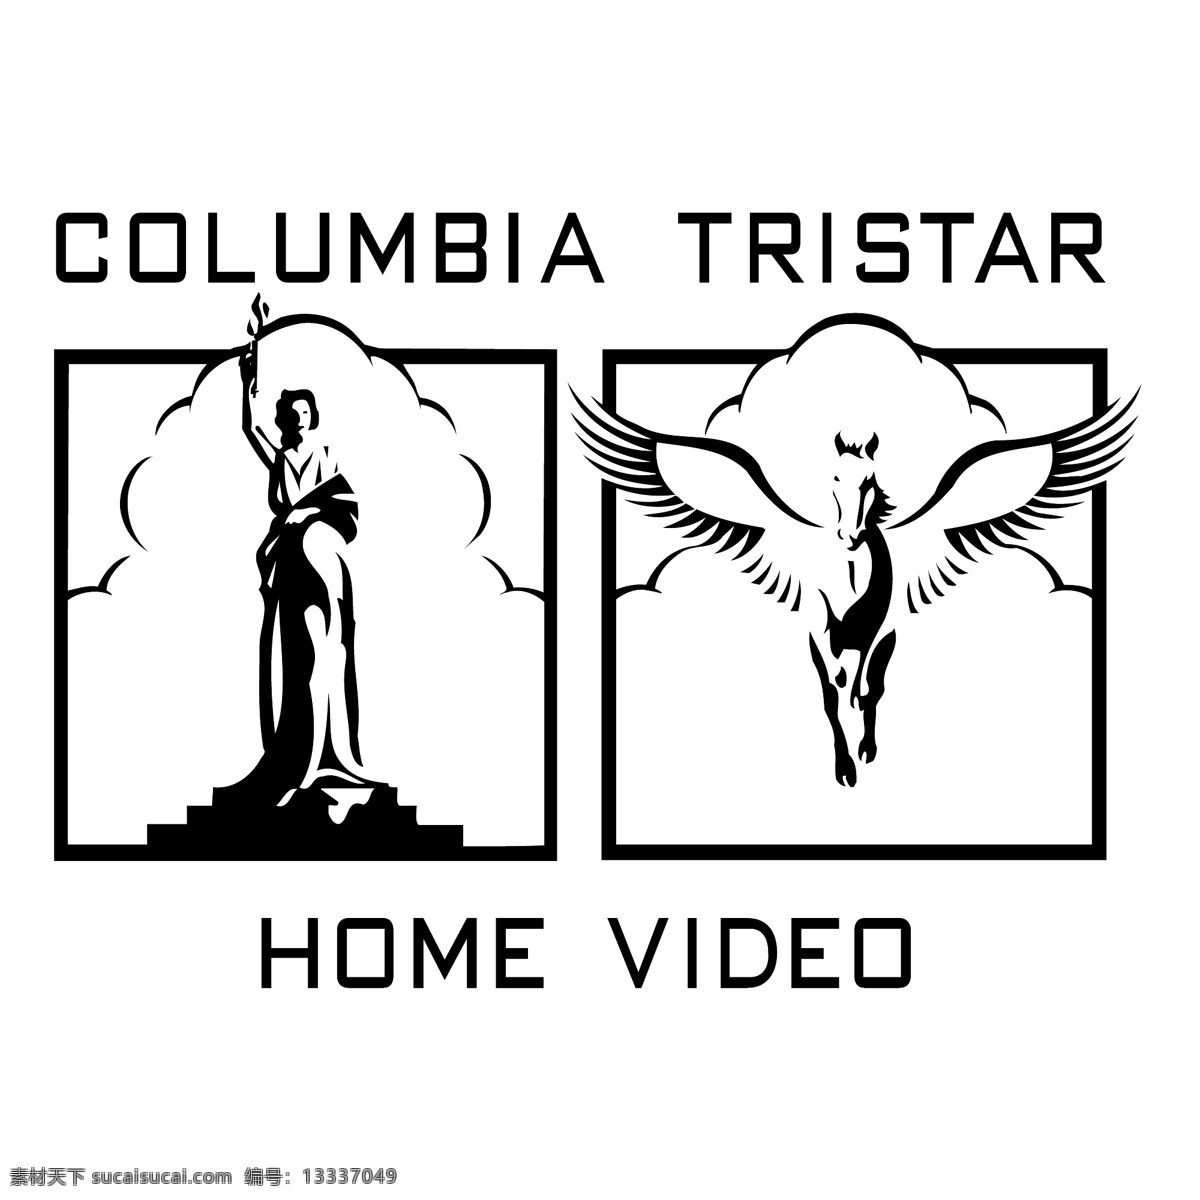 哥伦比亚 三星 哥伦比亚三星 标志 标识 向量 矢量 电影 公司 自由